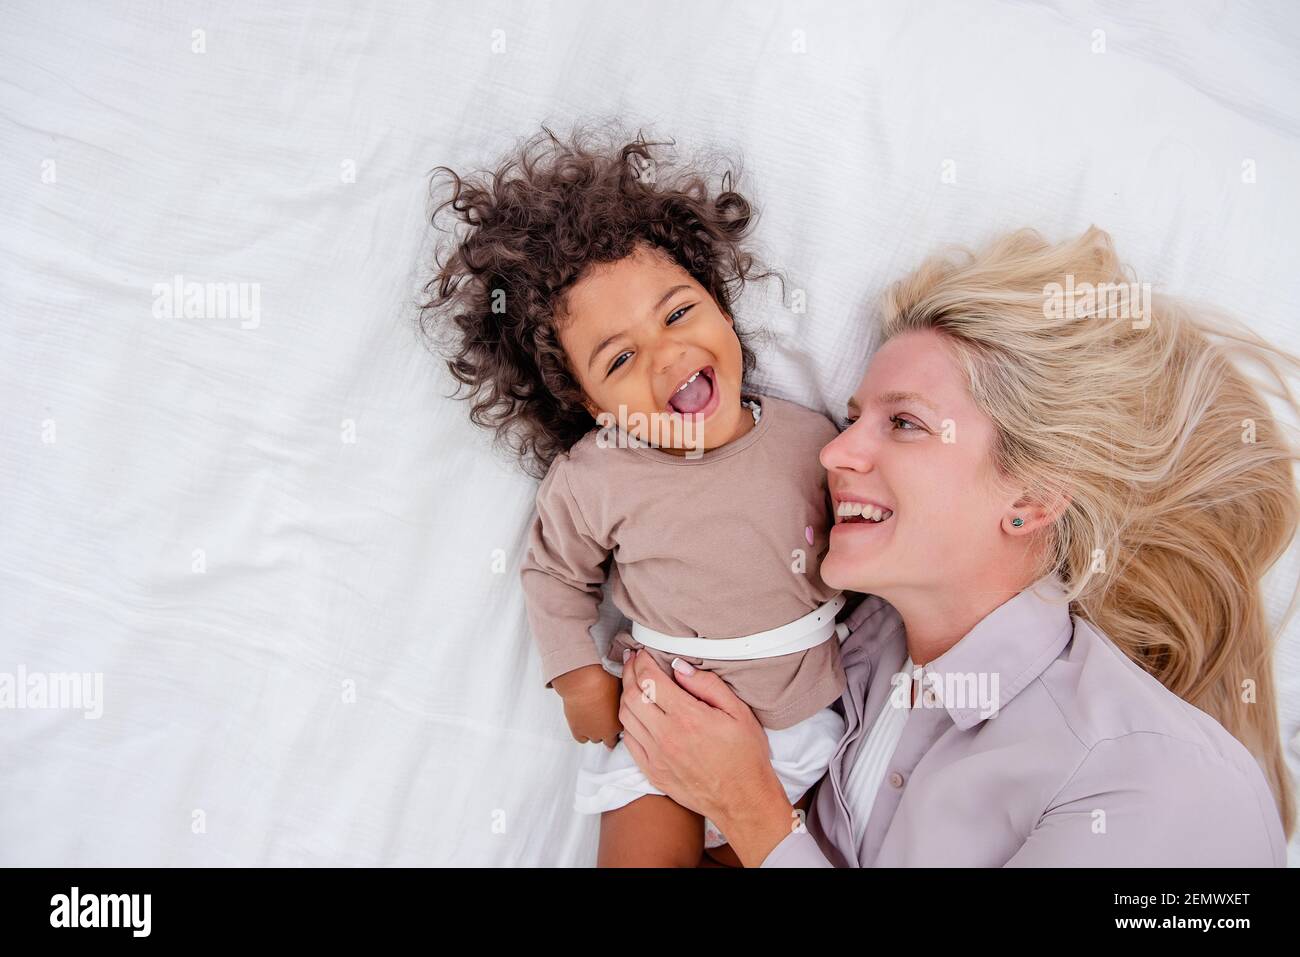 Junge kaukasische blonde Mutter kitzelt ihre kleine afroamerikanische Tochter. Auf weißem Bett liegen, Spaß haben, Blick von oben. Die Mädchen lachen, umarmen, die Frau kis Stockfoto